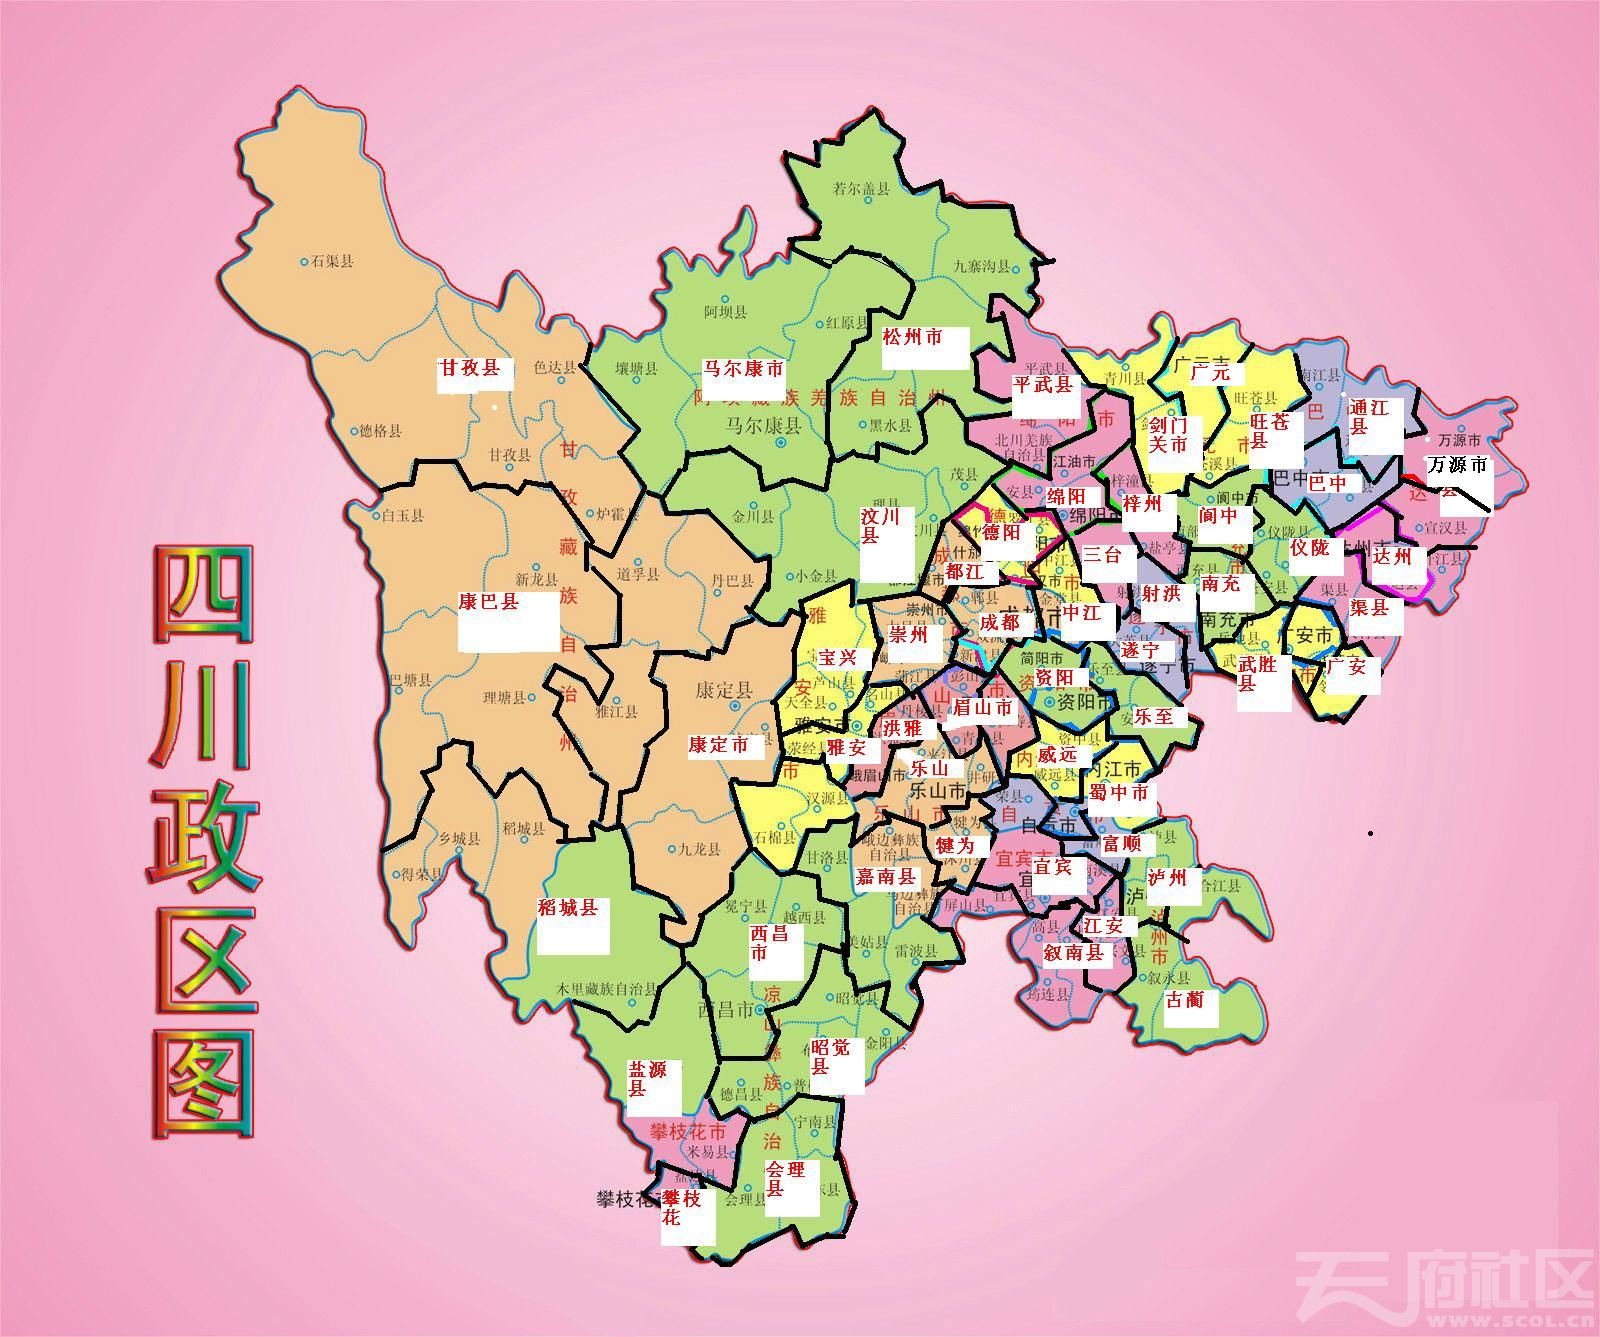 四川省直管县猜想,欢迎拍砖区划地名应该是这样! 